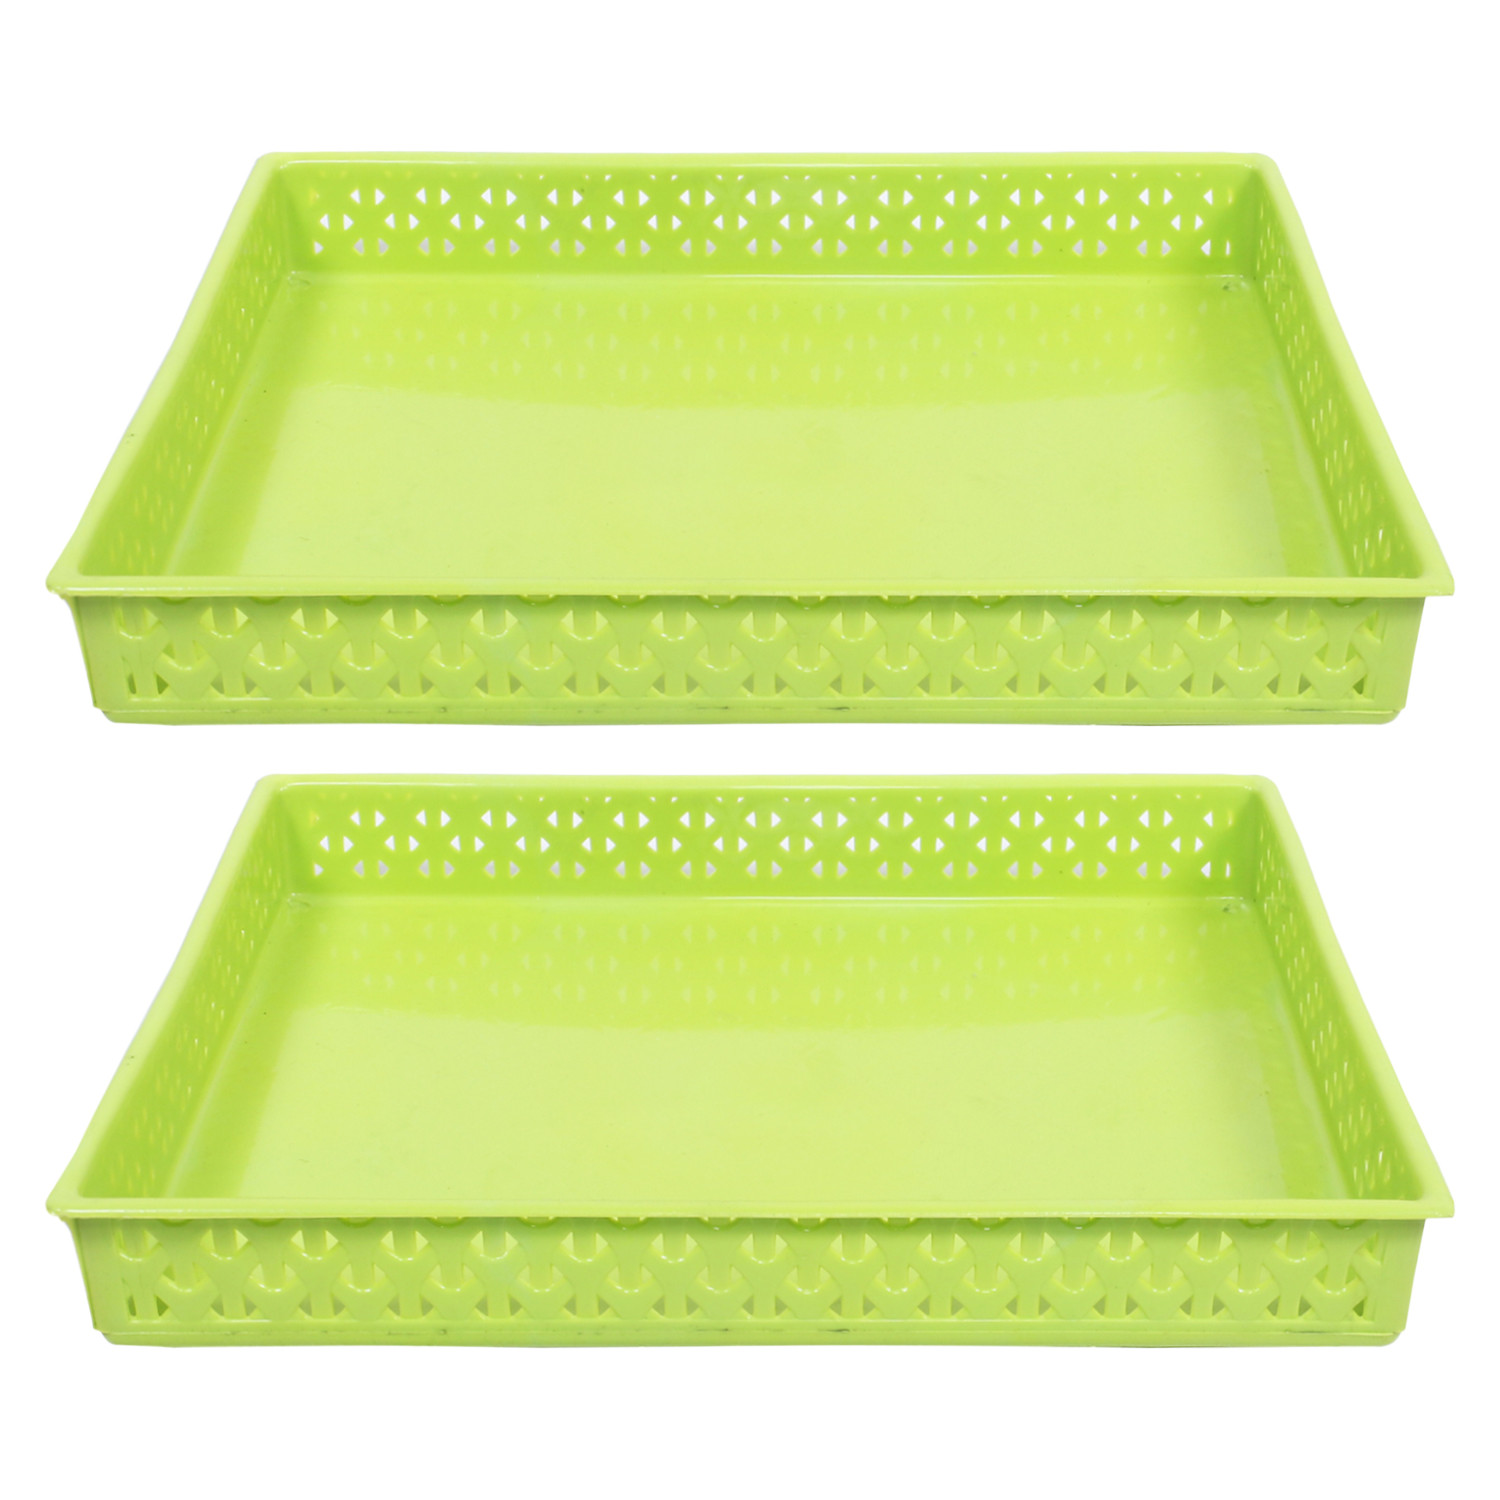 Kuber Industries Storage Tray|Versatile Plastic Storage Organizer|Rectangular Tray for Kitchen Storage|Storage Tray for office|ALEXA-15 (Green)